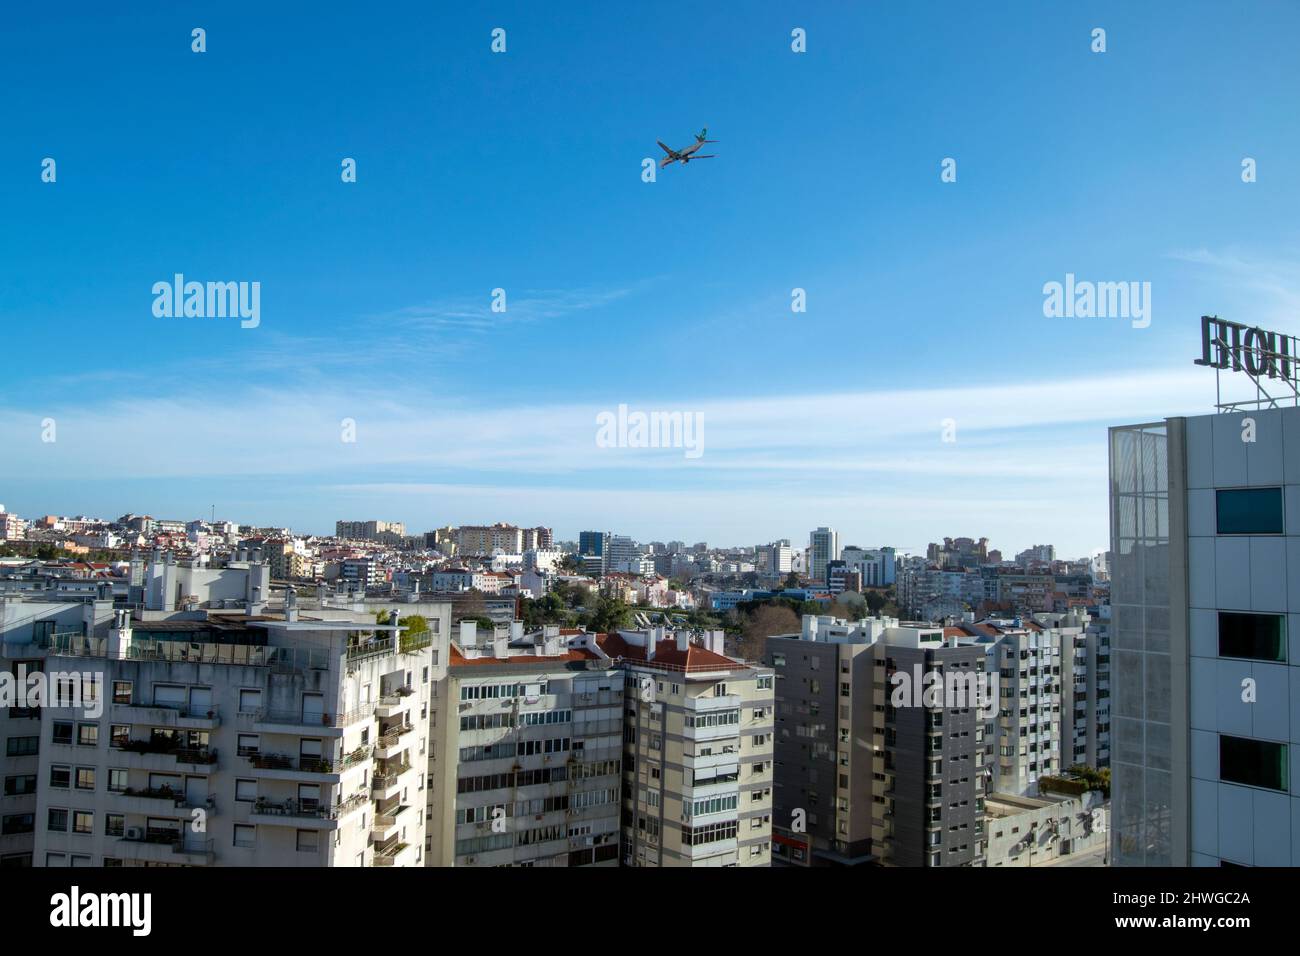 Blick auf die Stadt Lissabon vom Hotel auf der 9.. Etage. Große europäische Städte und Hauptstädte. Lissabon. Stockfoto